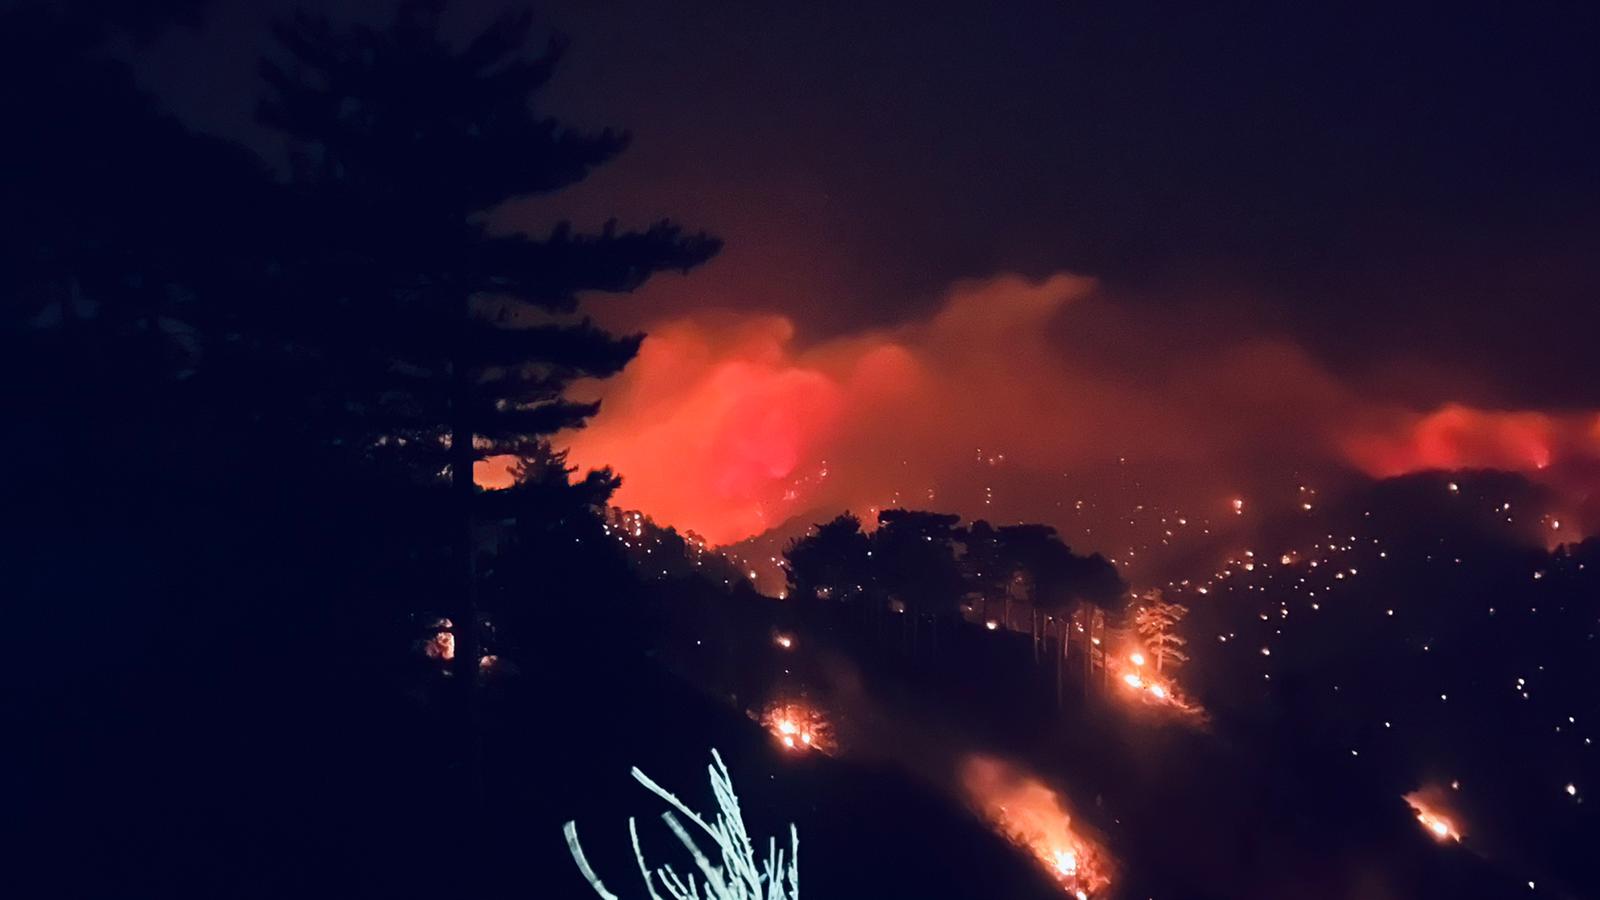 Incendi, nuova notte di fuoco in Aspromonte. Fiamme verso Montalto